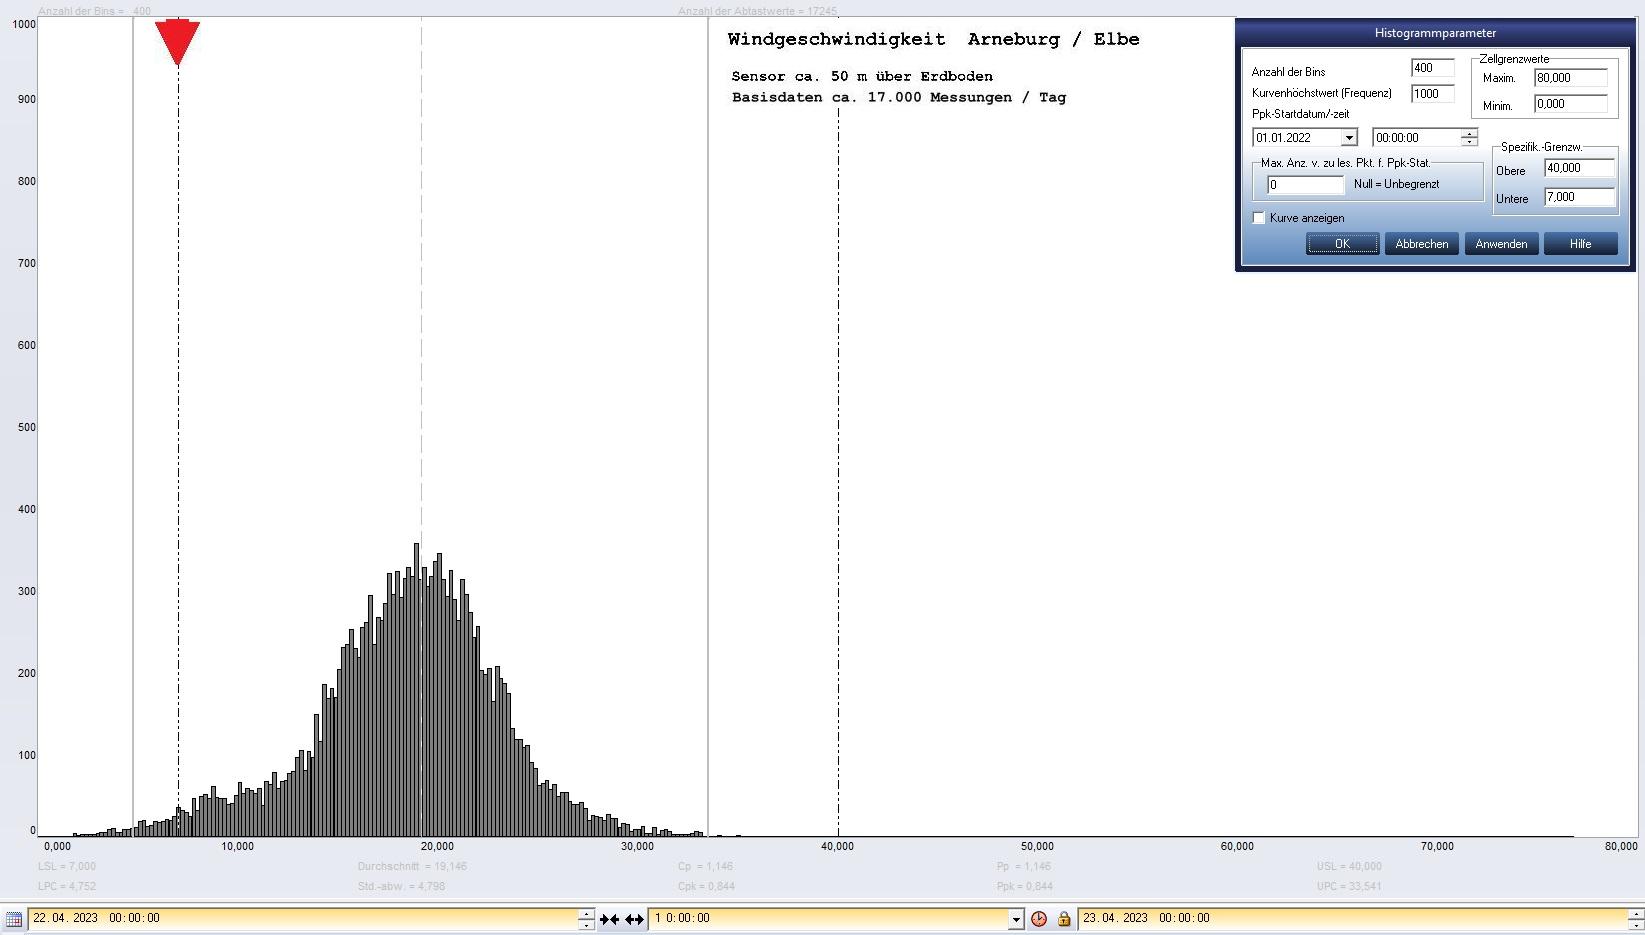 Arneburg Tages-Histogramm Winddaten, 22.04.2023
  Histogramm, Sensor auf Gebude, ca. 50 m ber Erdboden, Basis: 5s-Aufzeichnung